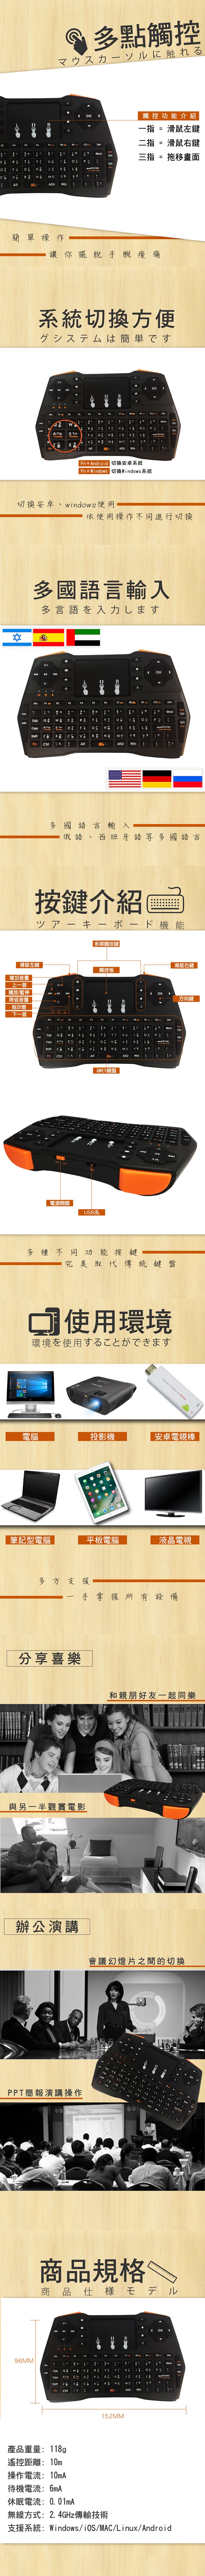 【升級版】u-ta掌上型多功能無線鍵盤PC1(公司貨)